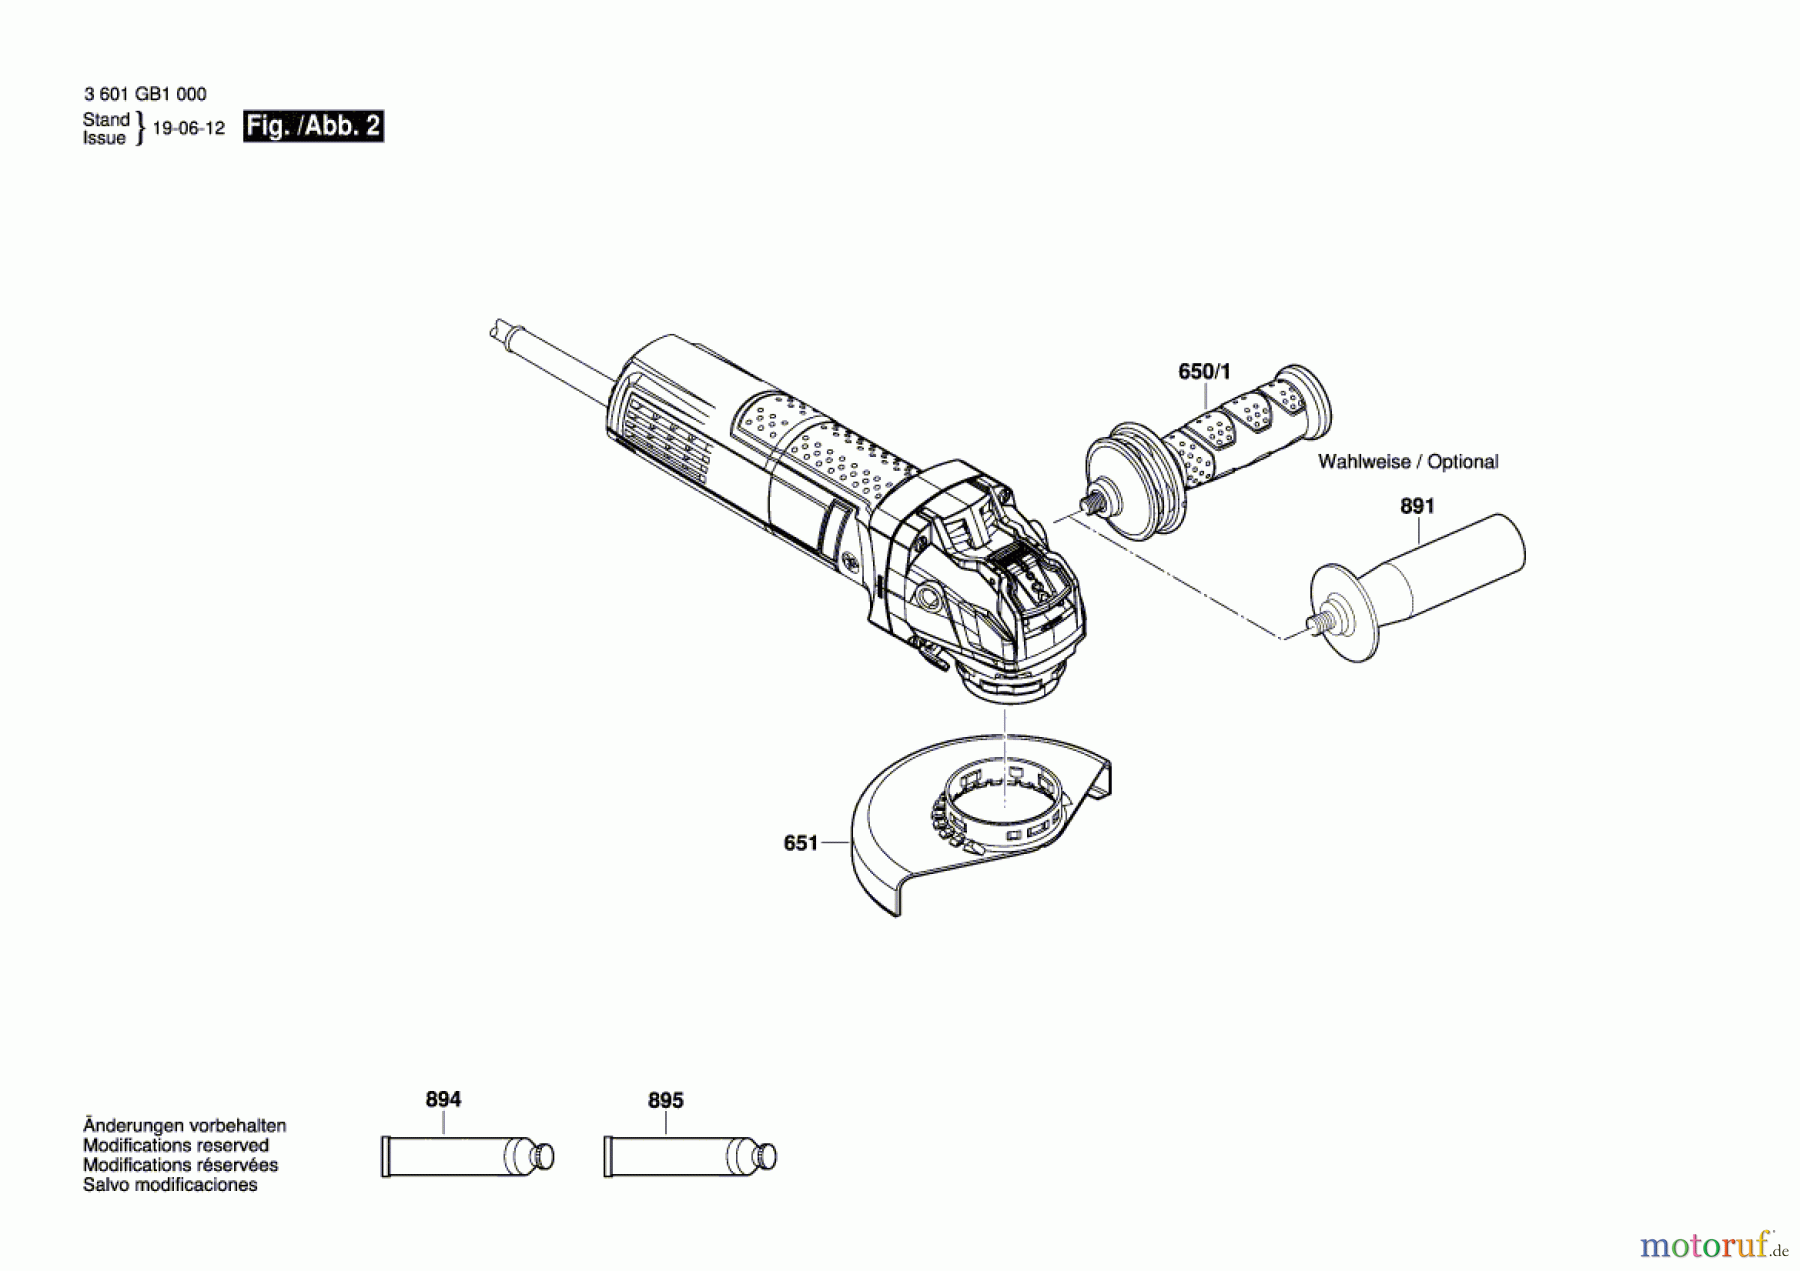  Bosch Werkzeug Winkelschleifer GWX 9-115 S Seite 2